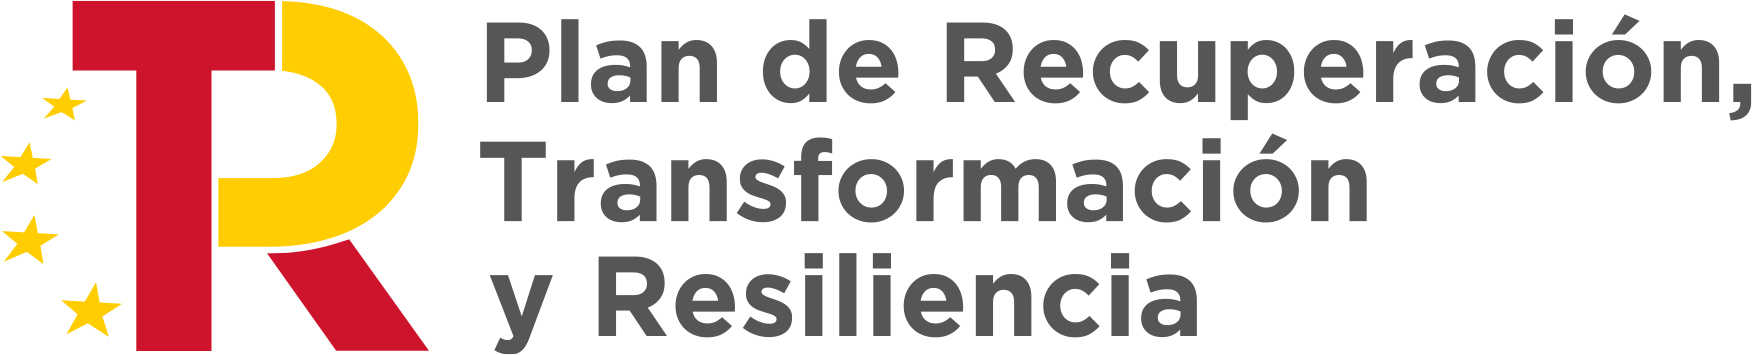 Plan de recuperación trasformación y resiliencia